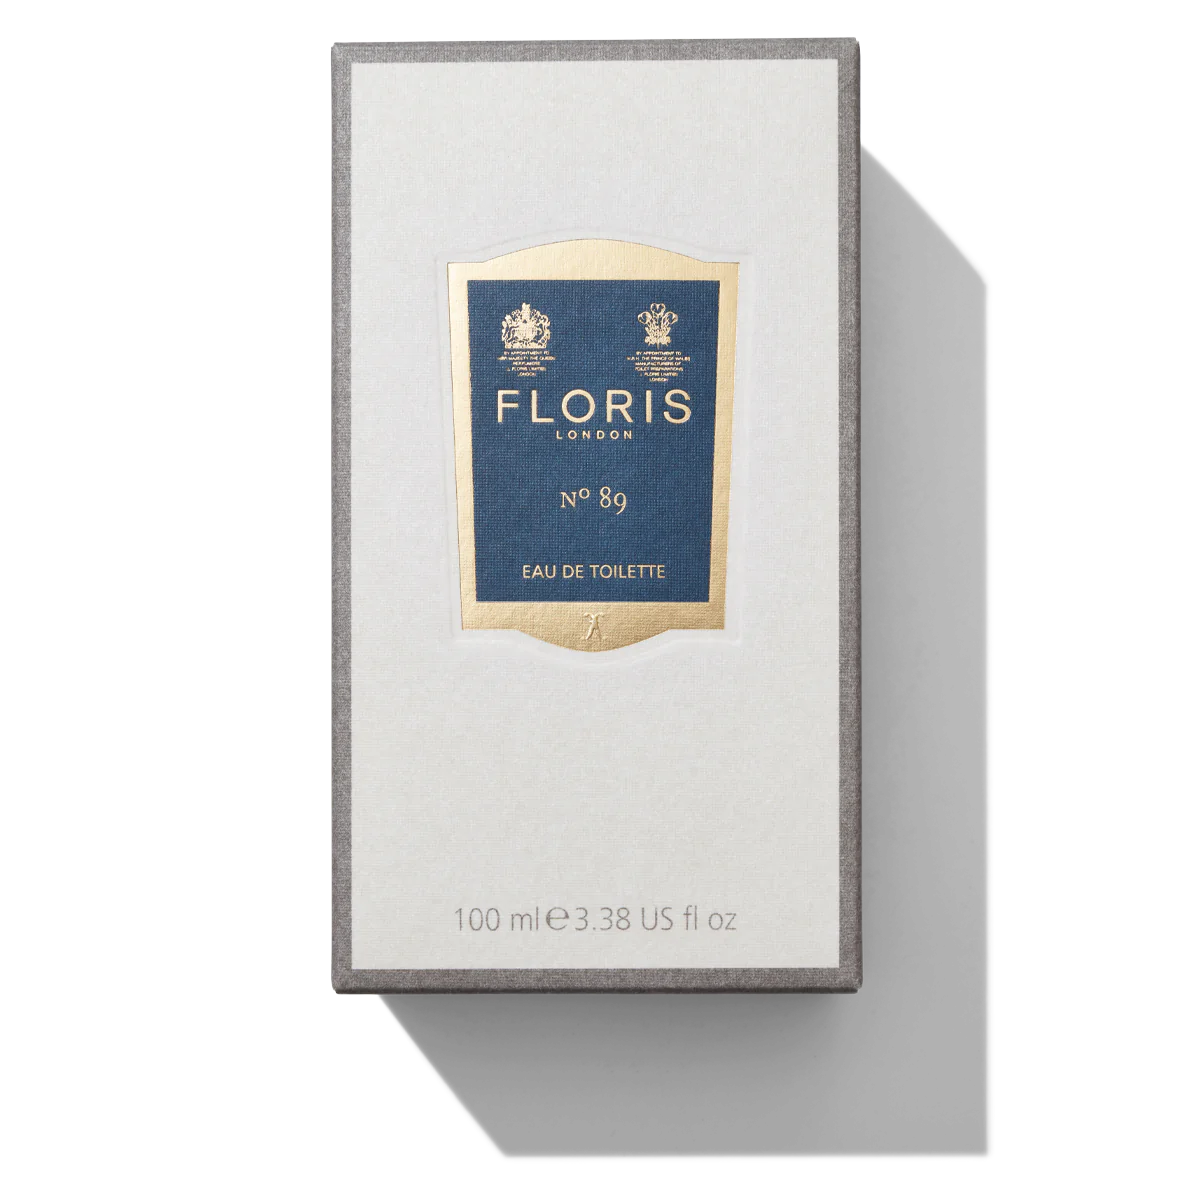 Floris London No. 89 Eau de Toilette 100ml Box